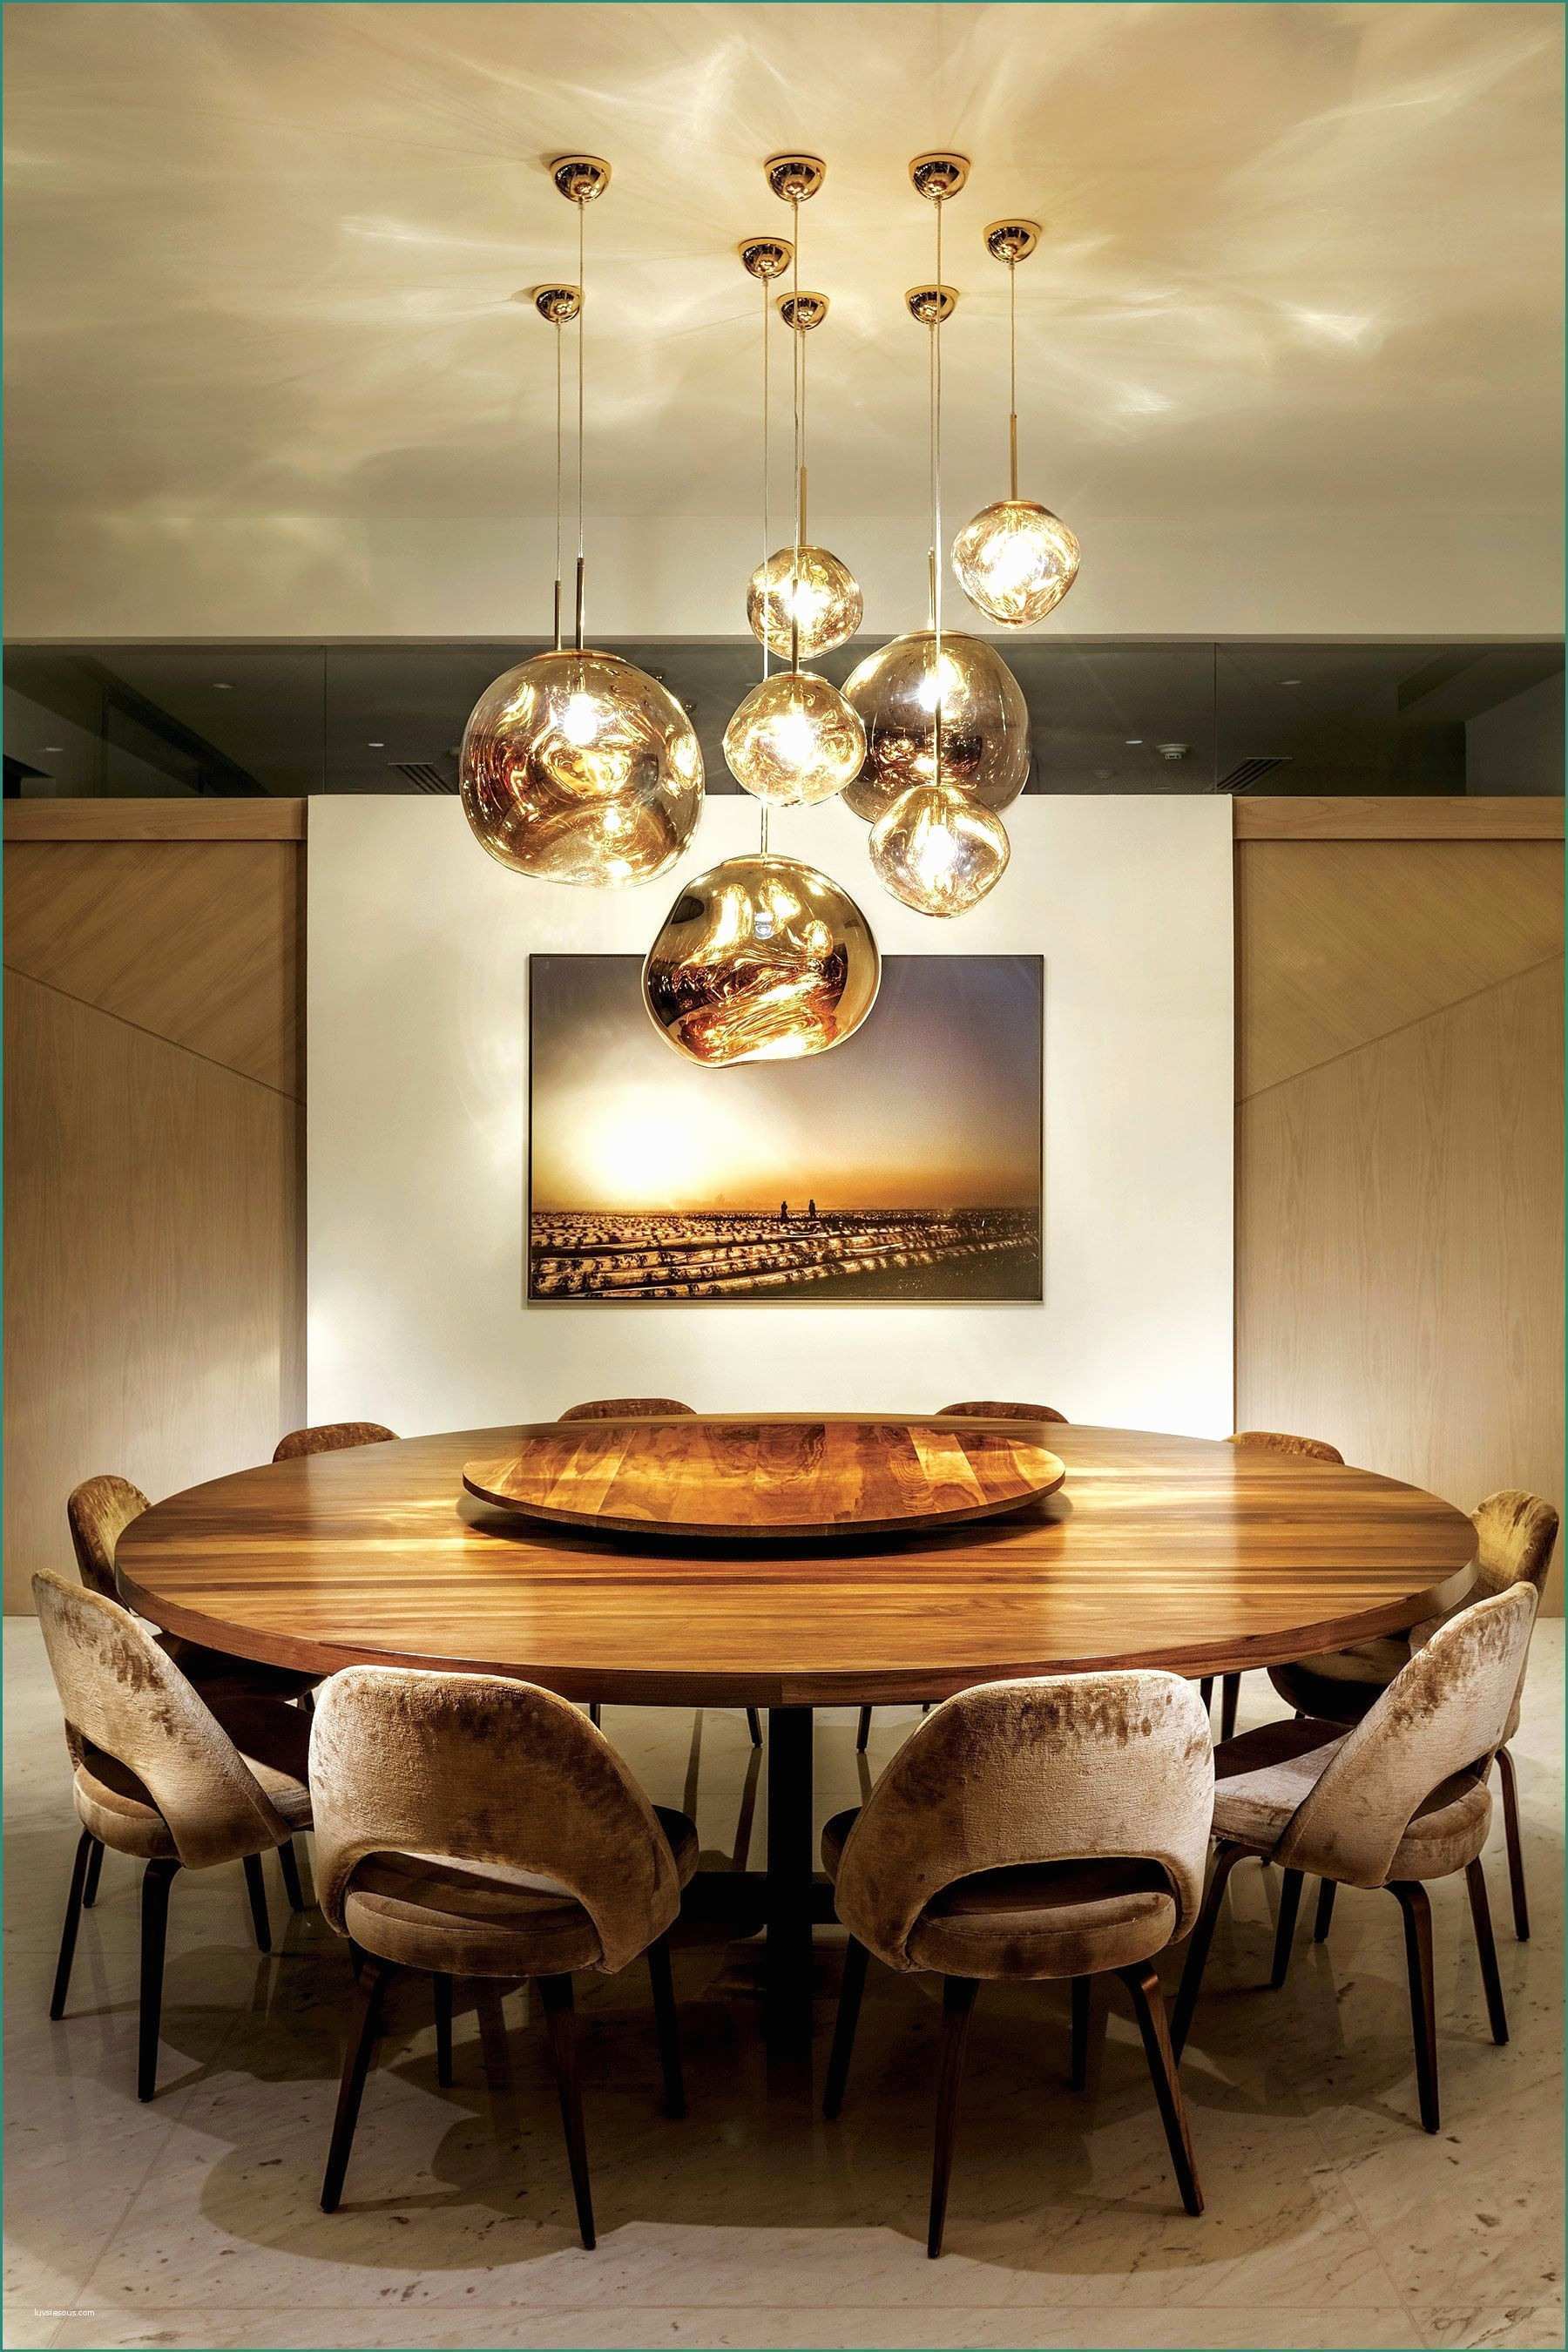 Arredamento Moderno Casa E Stunning Dining Room Ideas Pinterest In Arredi Classici E Moderni In